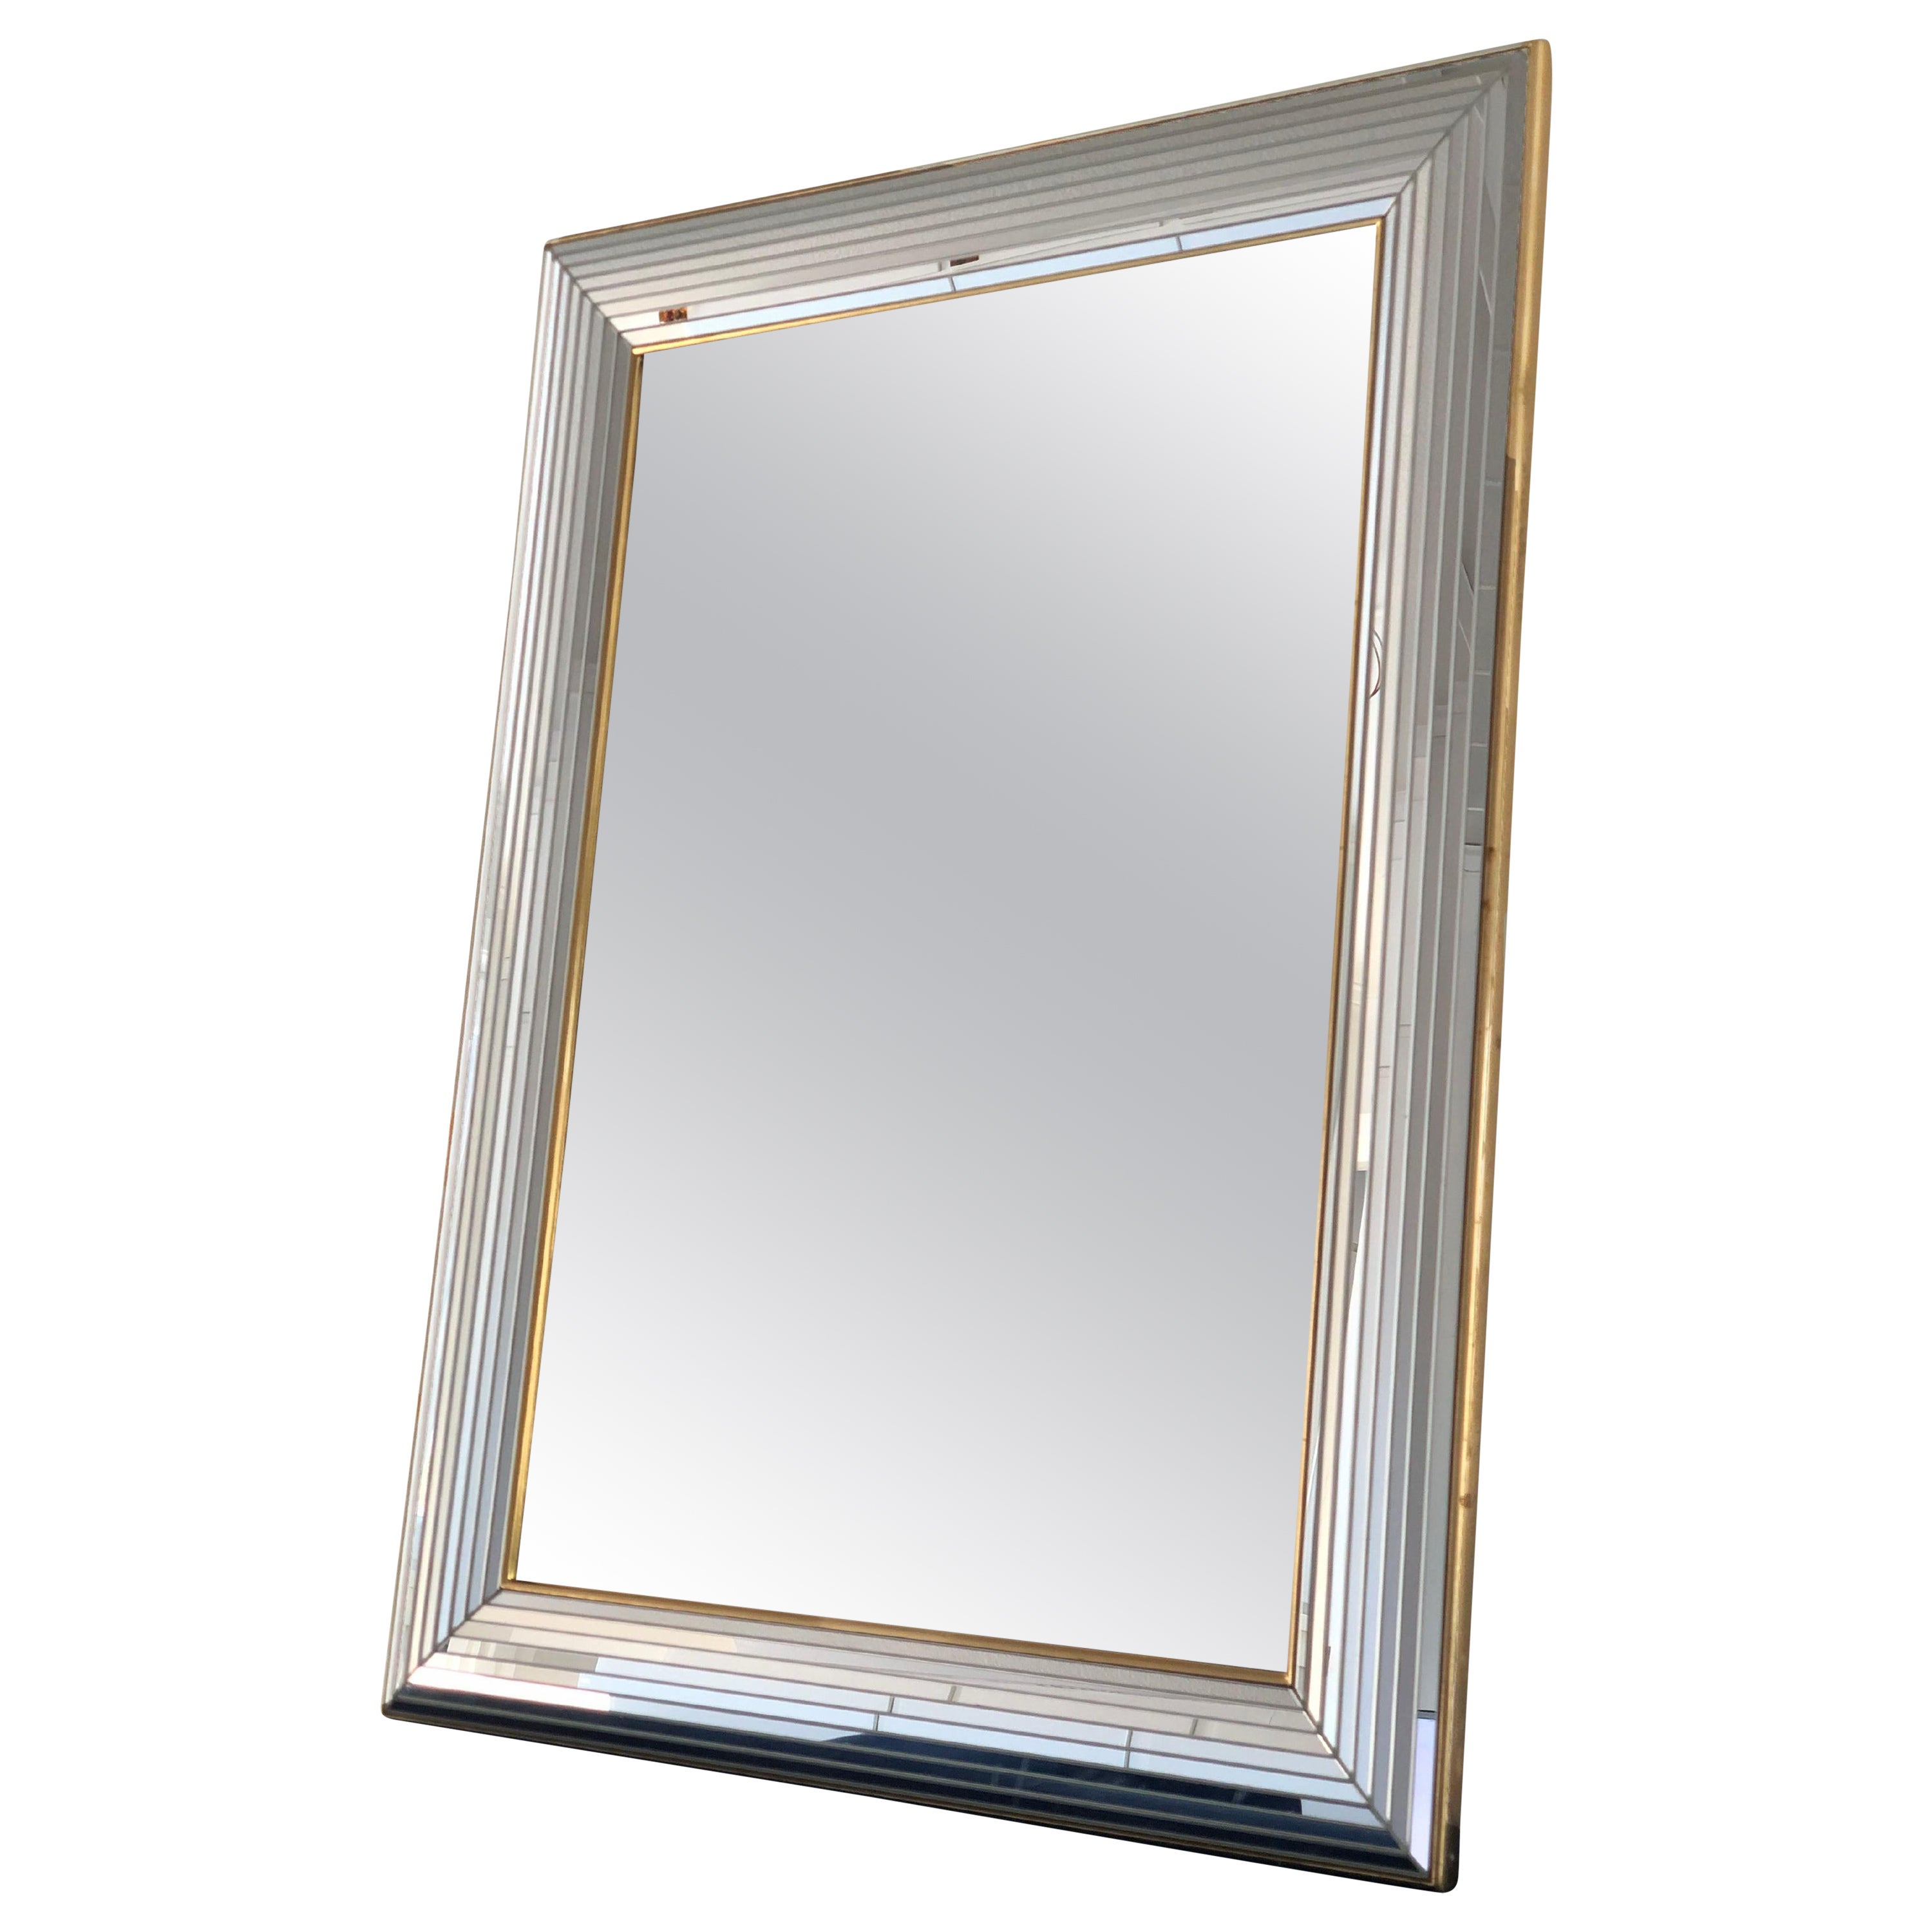 Schöner belgischer Spiegel mit einem Glasrahmen mit goldenem Streifen. Der Rahmen besteht aus kleinen Spiegeln mit Facettenschliff, die sich über die gesamte Breite erstrecken.

Handgefertigter Spiegel In gutem Zustand. Belgien, 1980

Objekt: